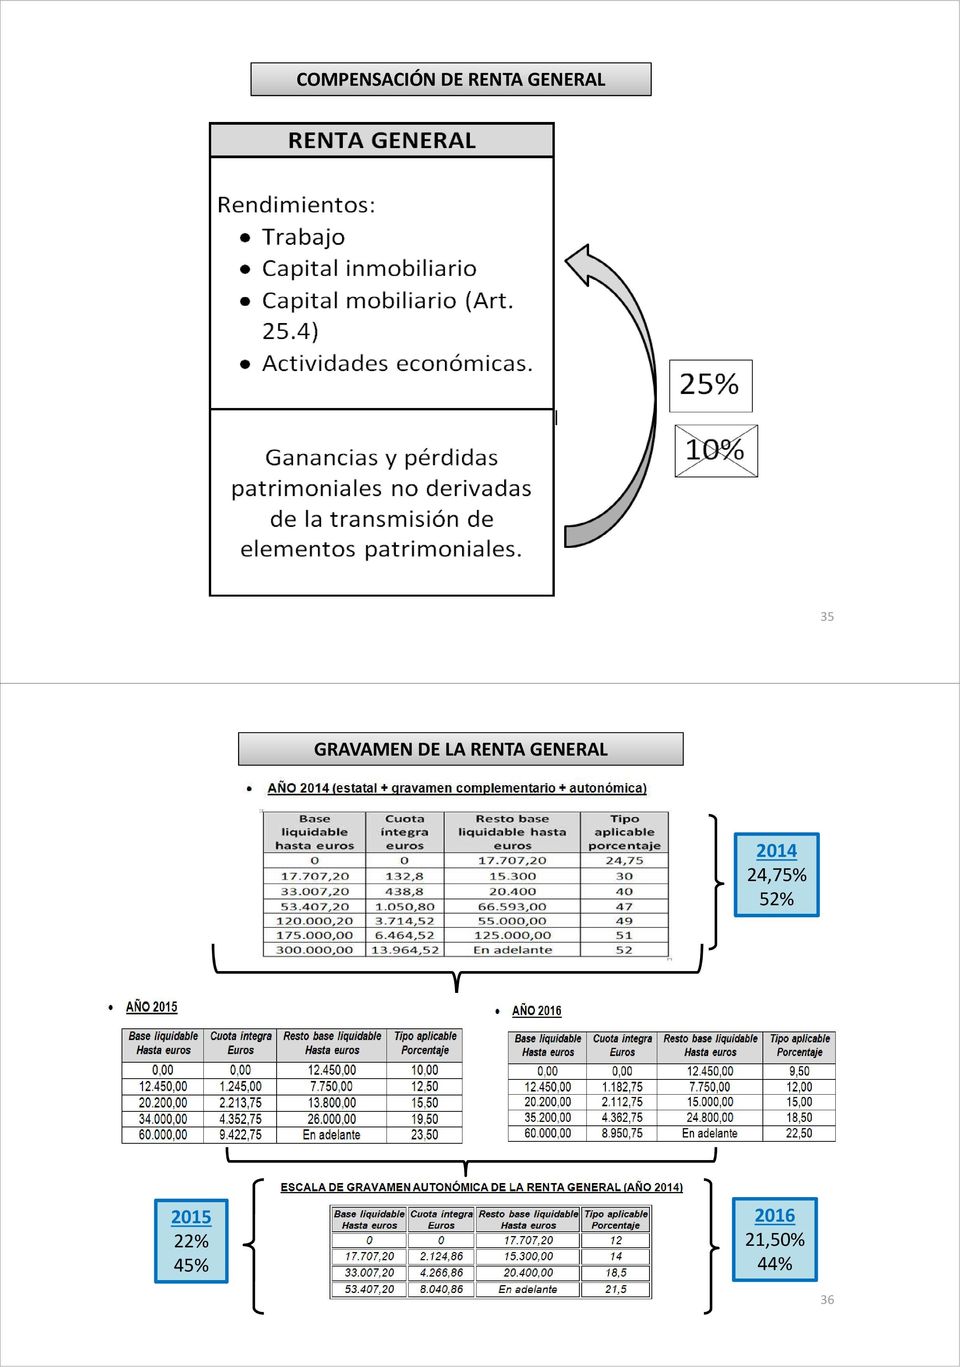 RENTA GENERAL 2014 24,75%